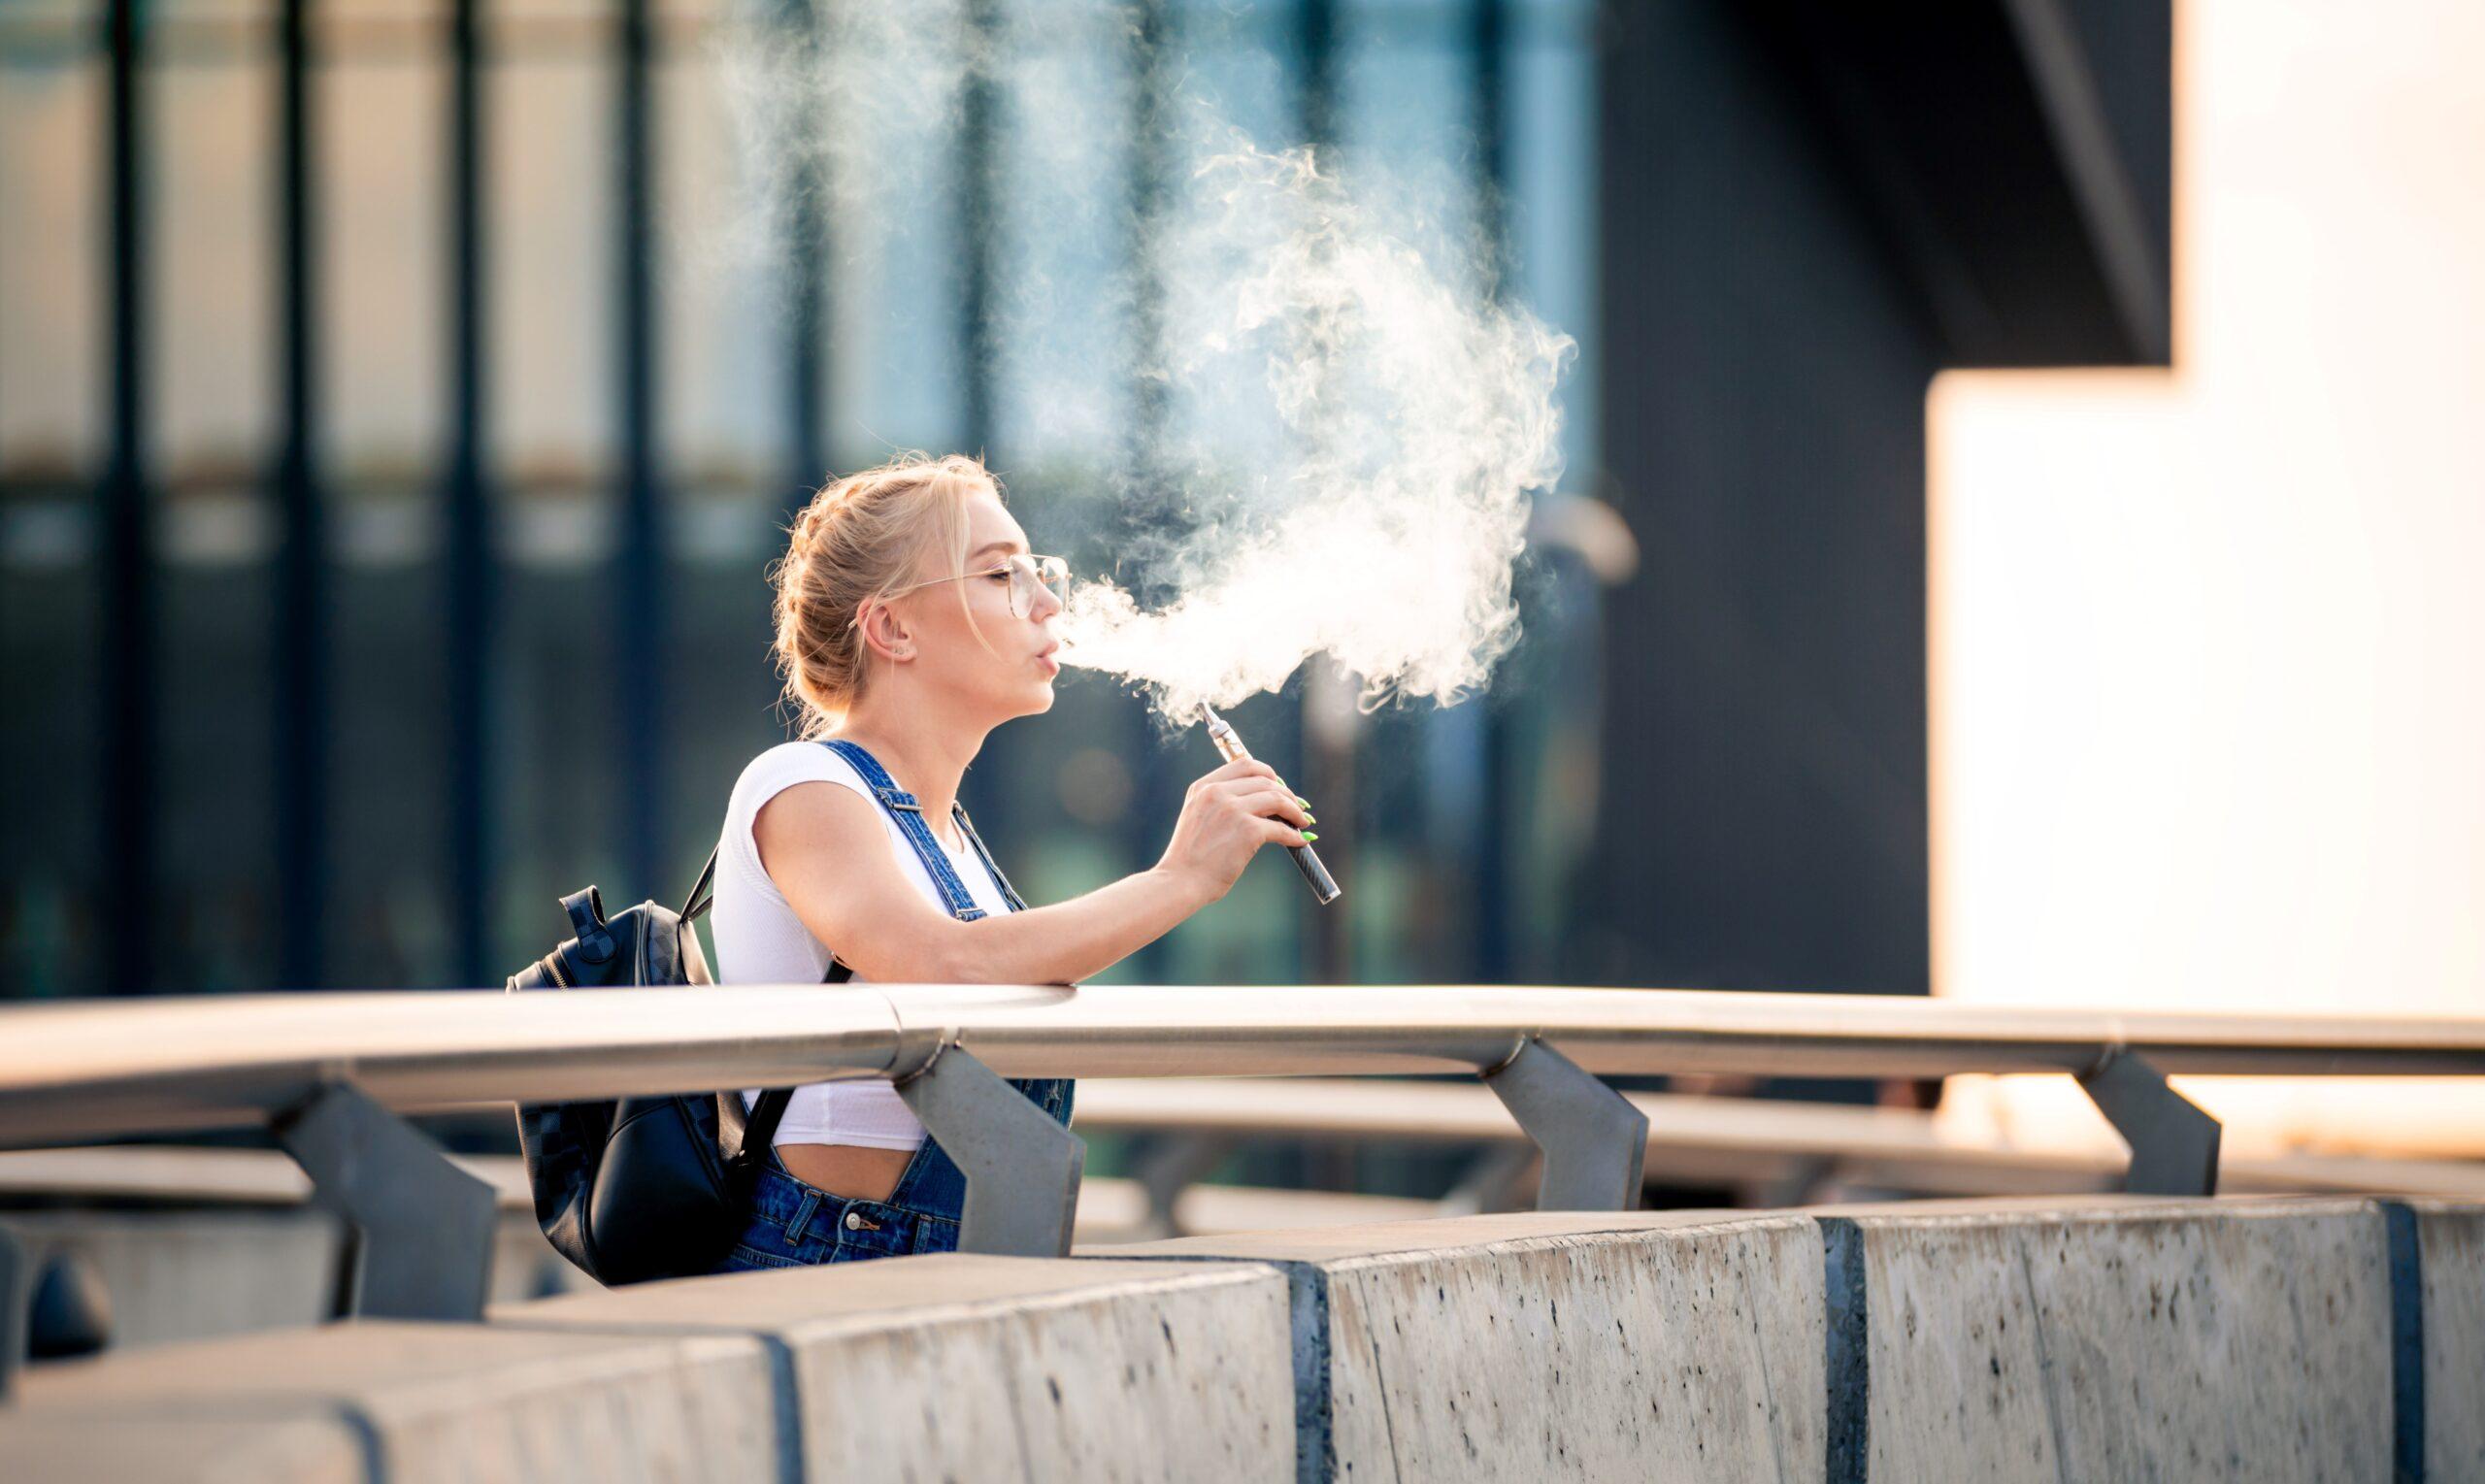 Eine Frau steht draußen auf einer Brücke und dampft eine Einweg-E-Zigarette, während sie eine große Rauchwolke ausatmet. Sie trägt eine Brille und hat einen Rucksack dabei.